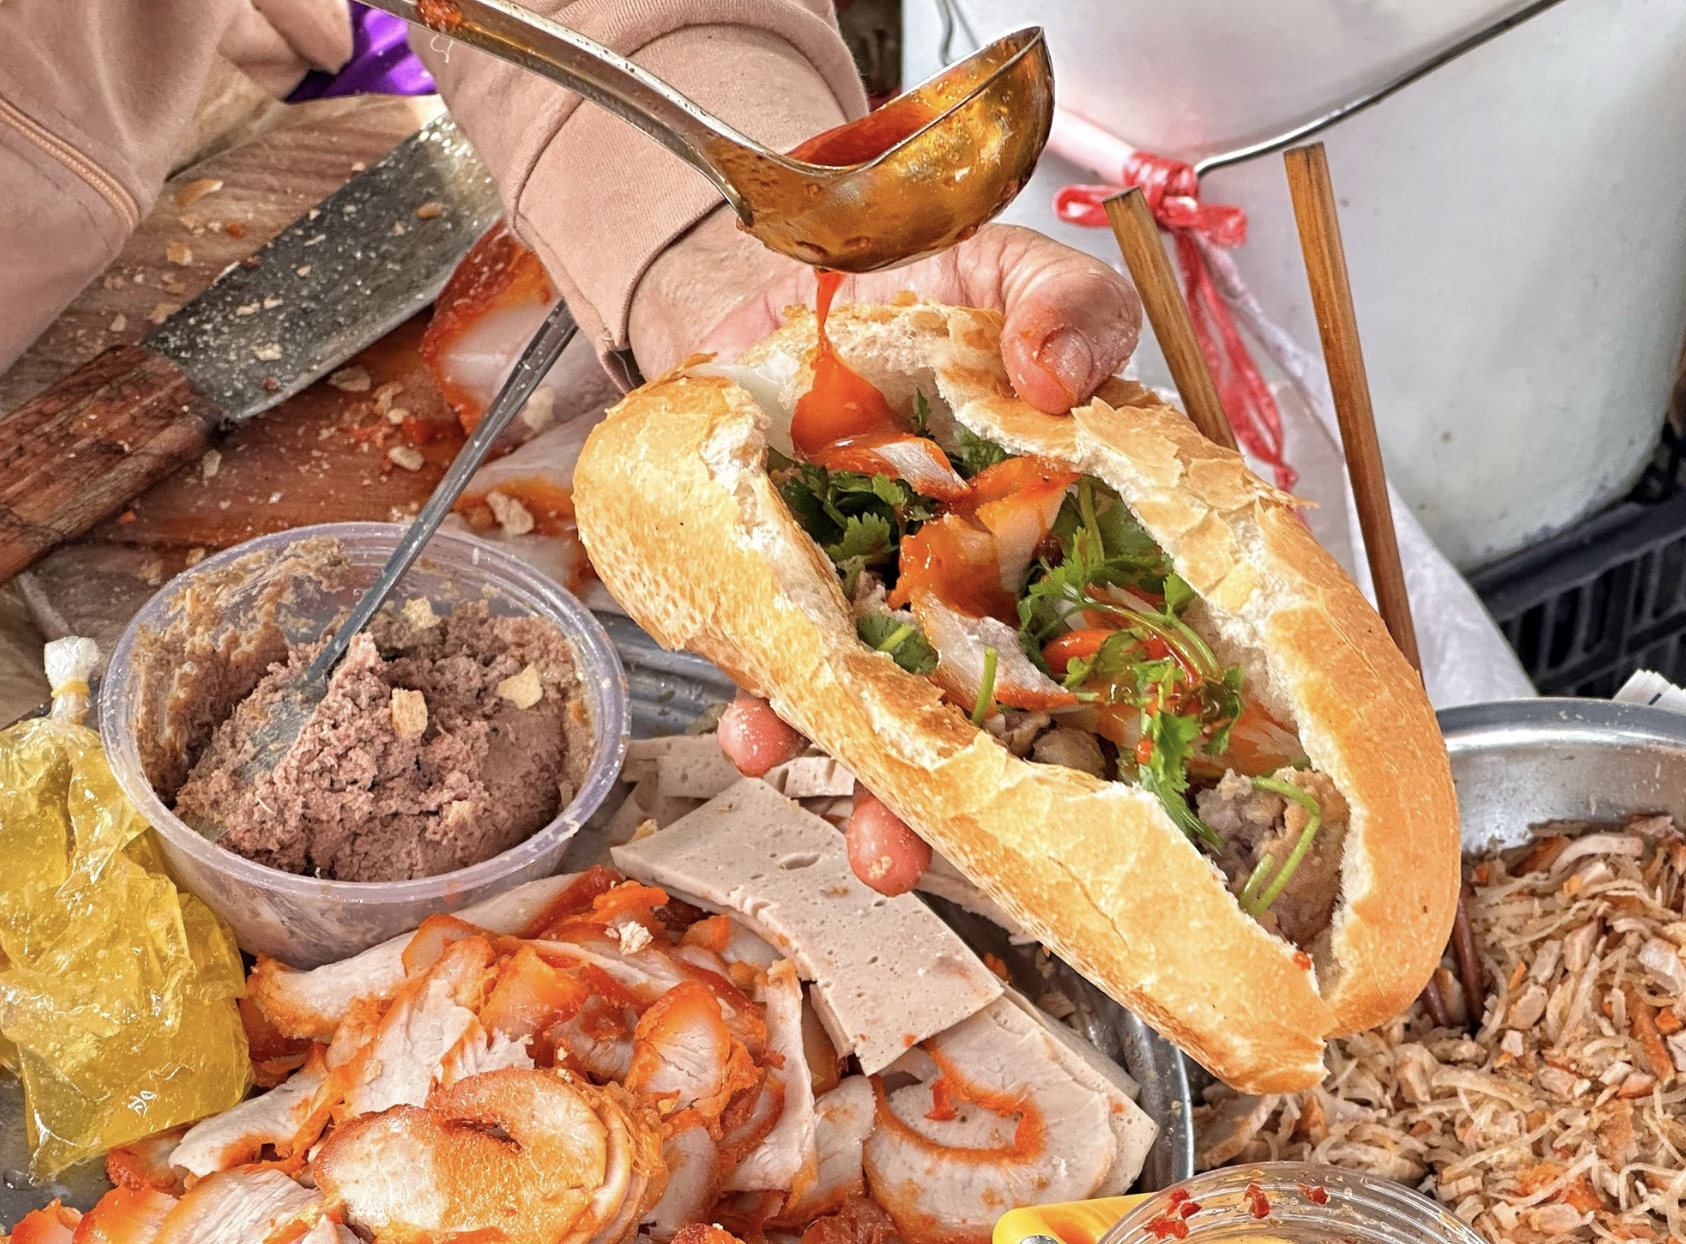 Hôm nay Michelin Guide công bố danh sách quán ăn ở Việt Nam: Bánh mì liệu có đánh rớt như 2023?- Ảnh 2.